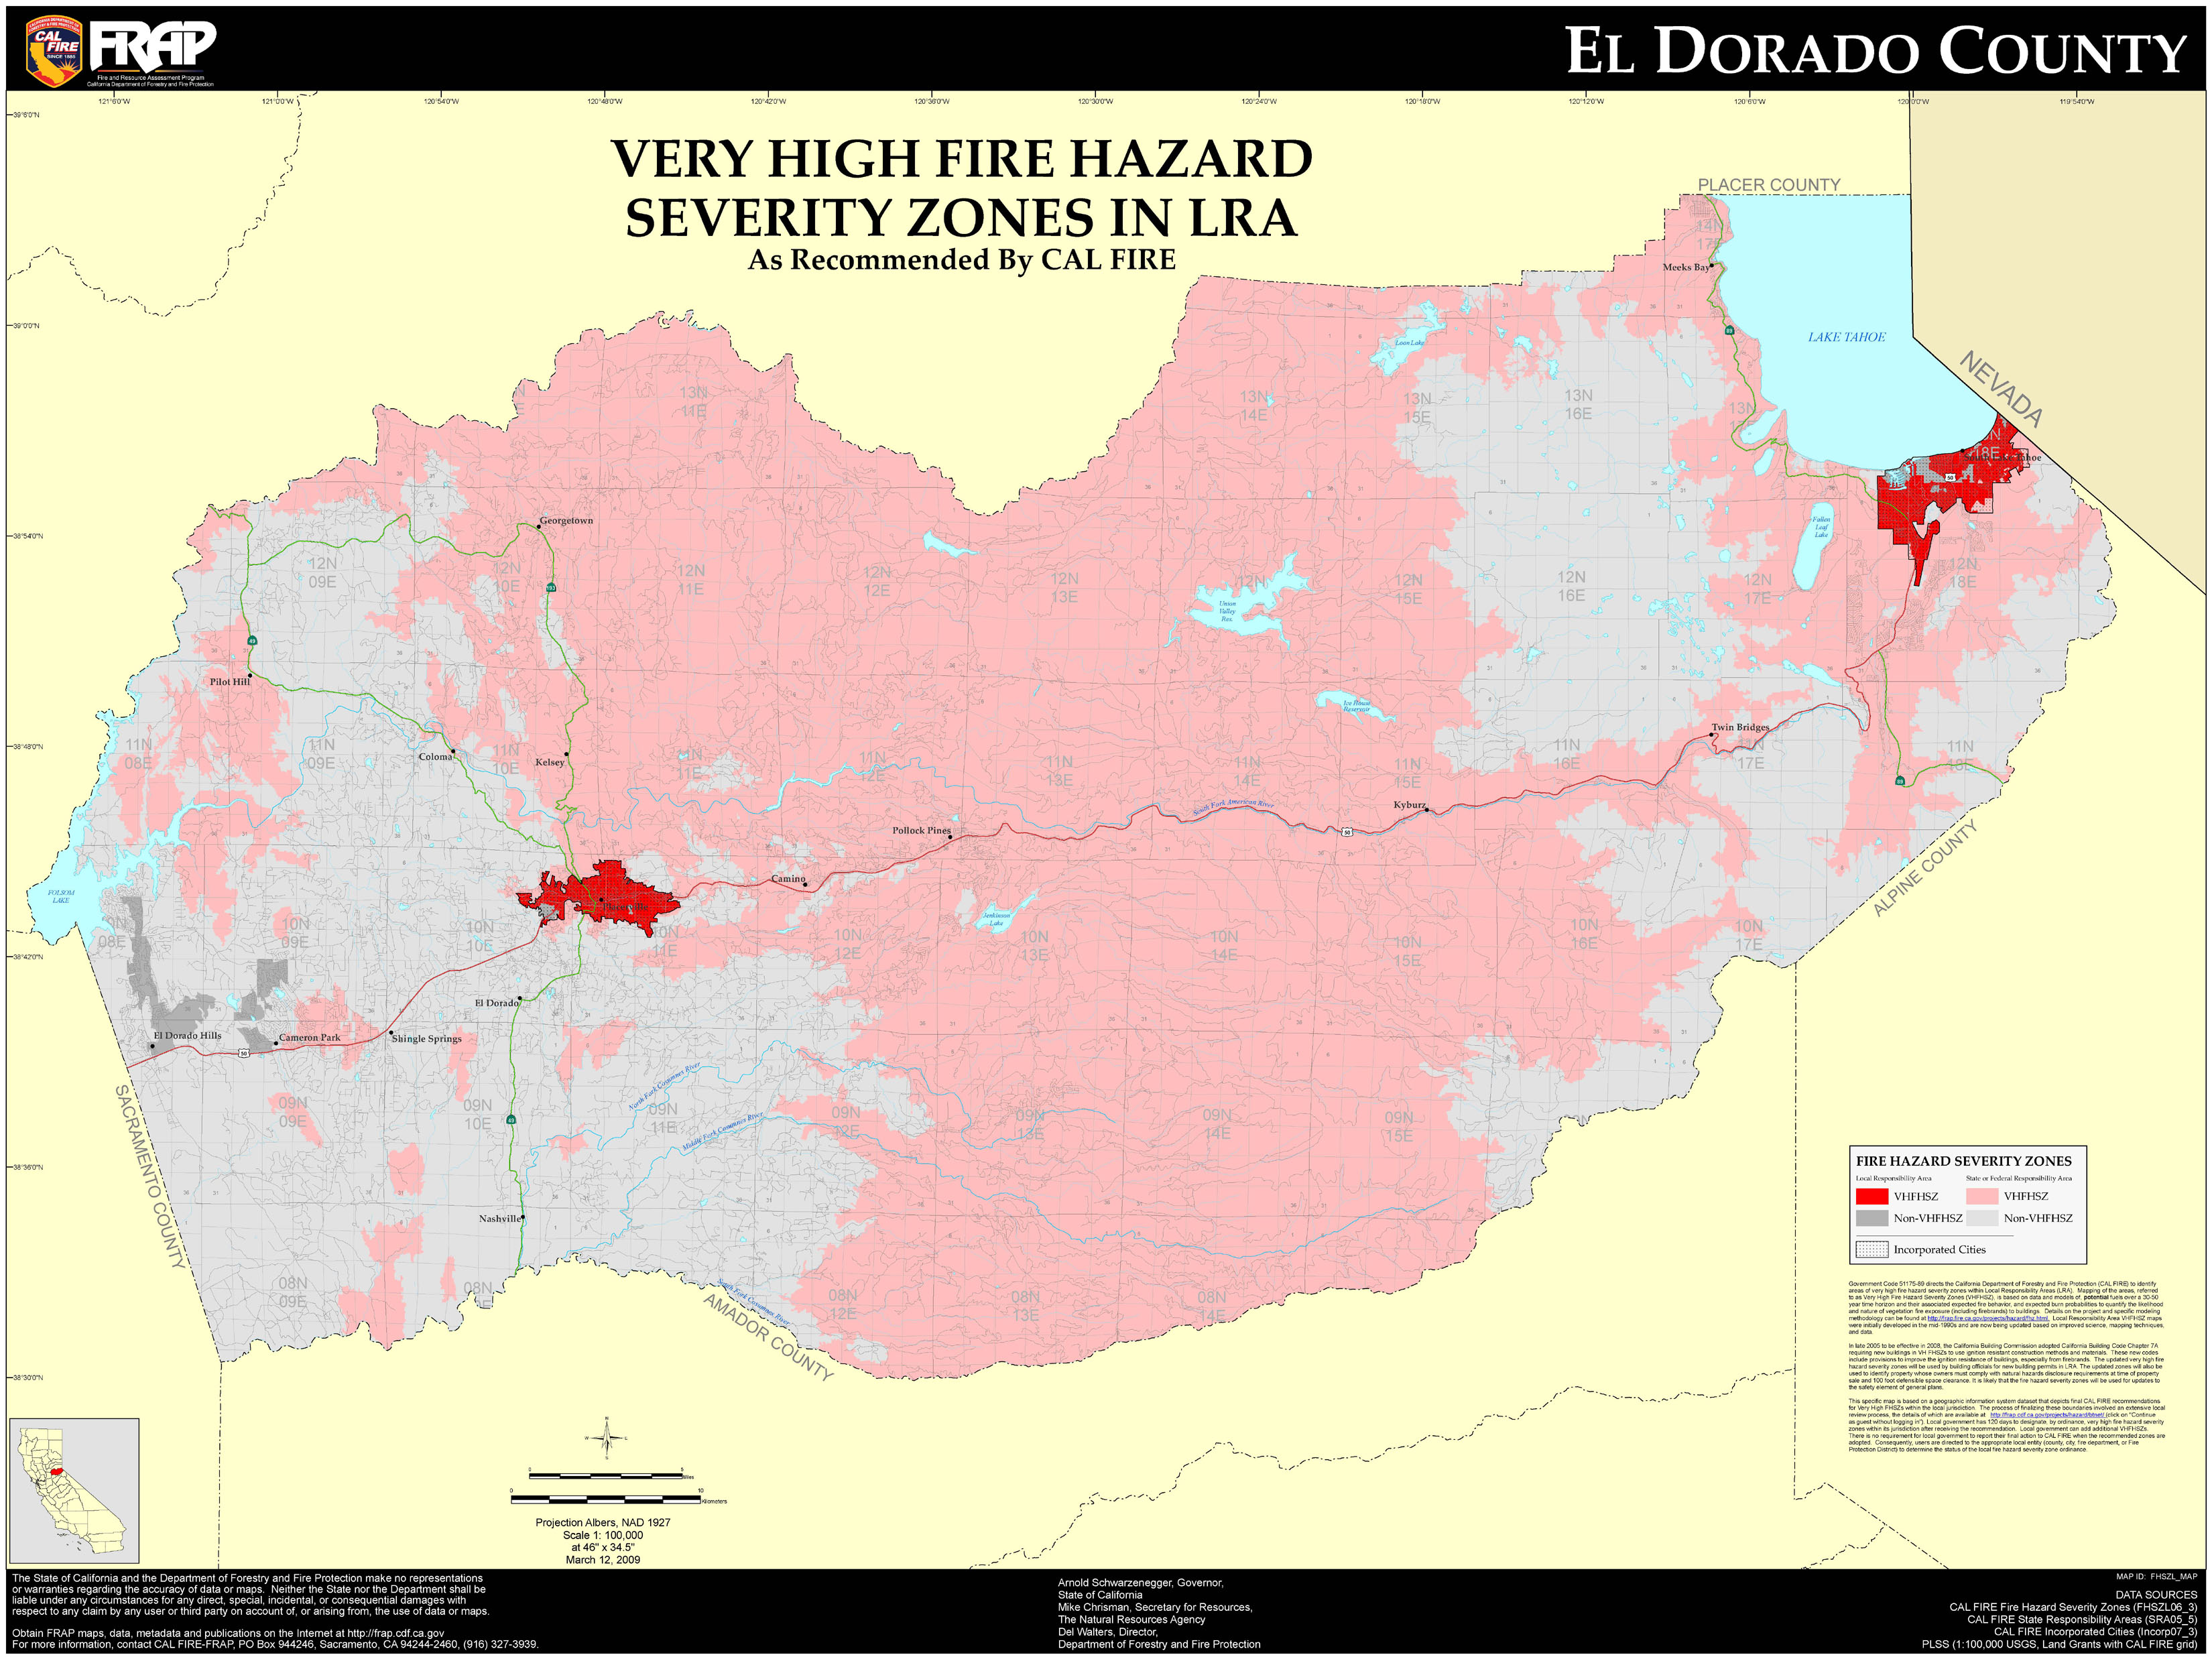 El Dorado County Very High Fire Hazard Severity Zones in LRA